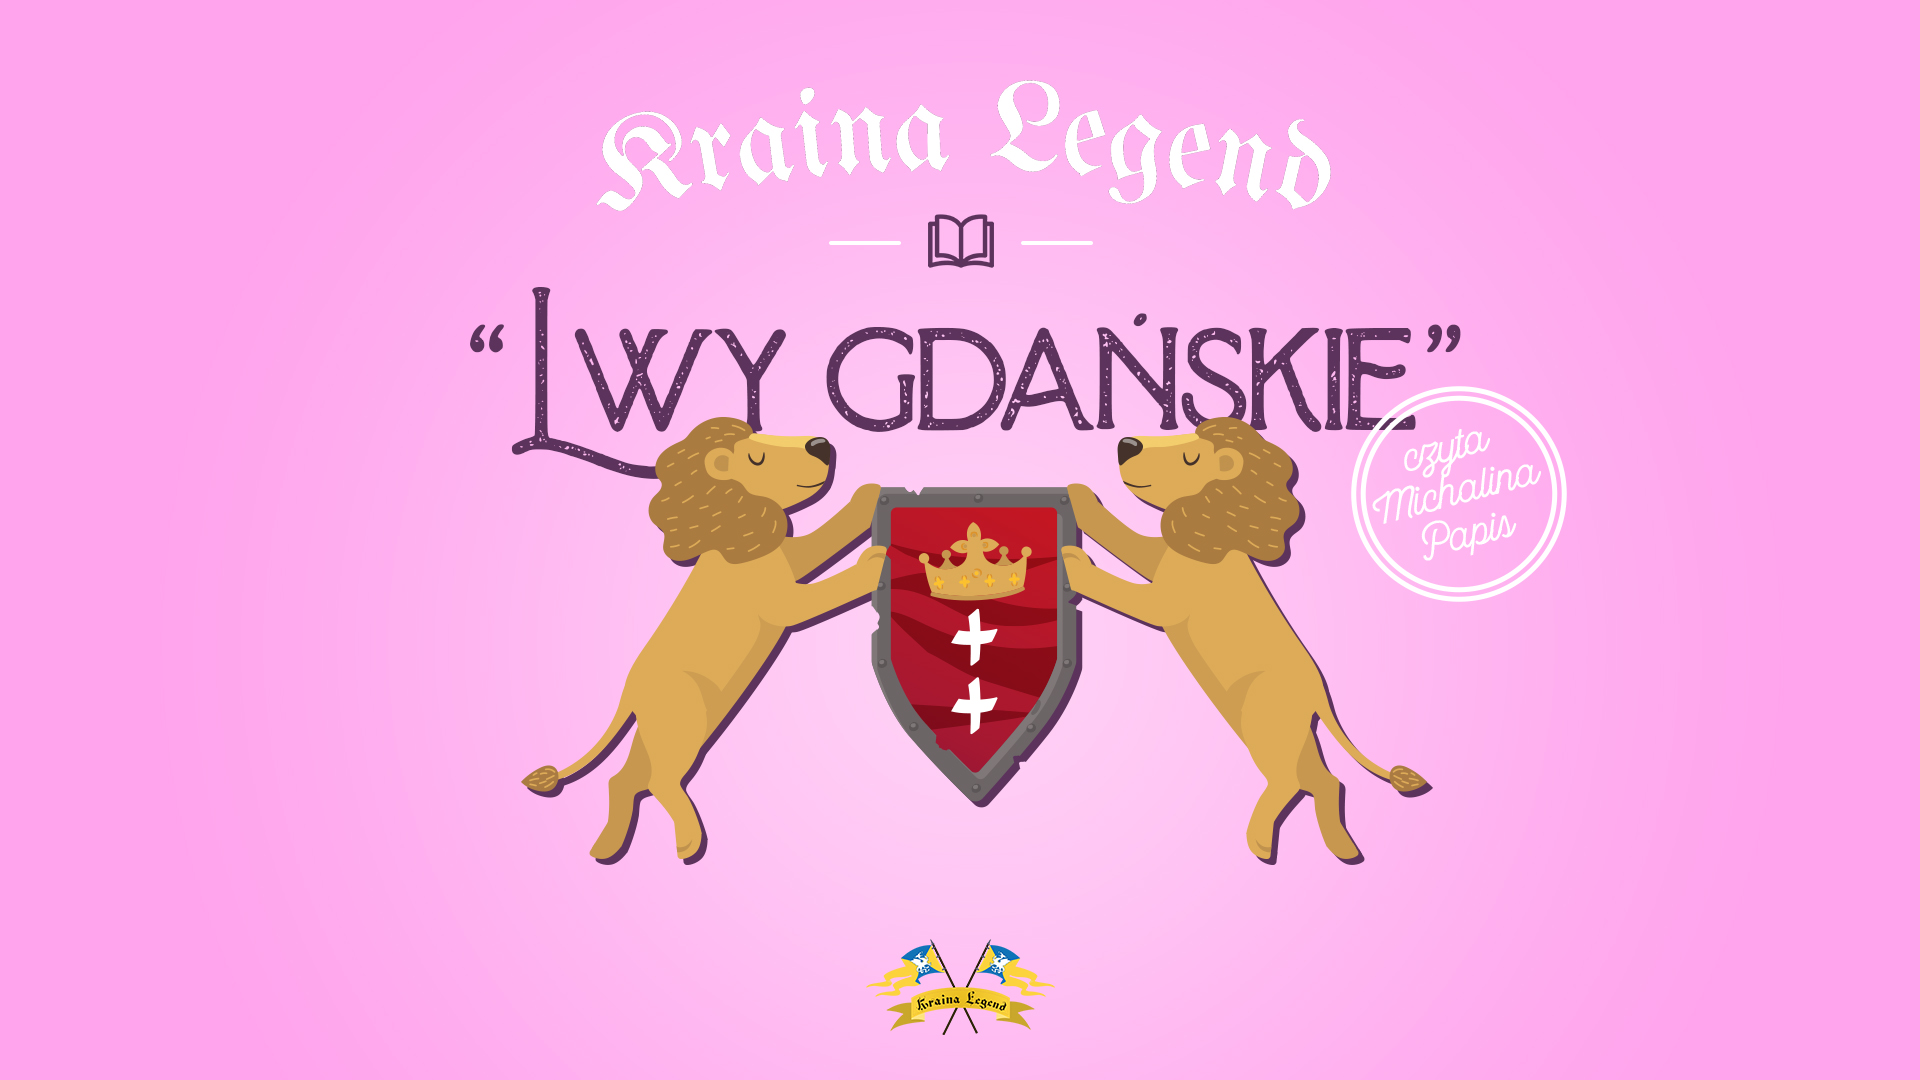 Lwy Gdańskie